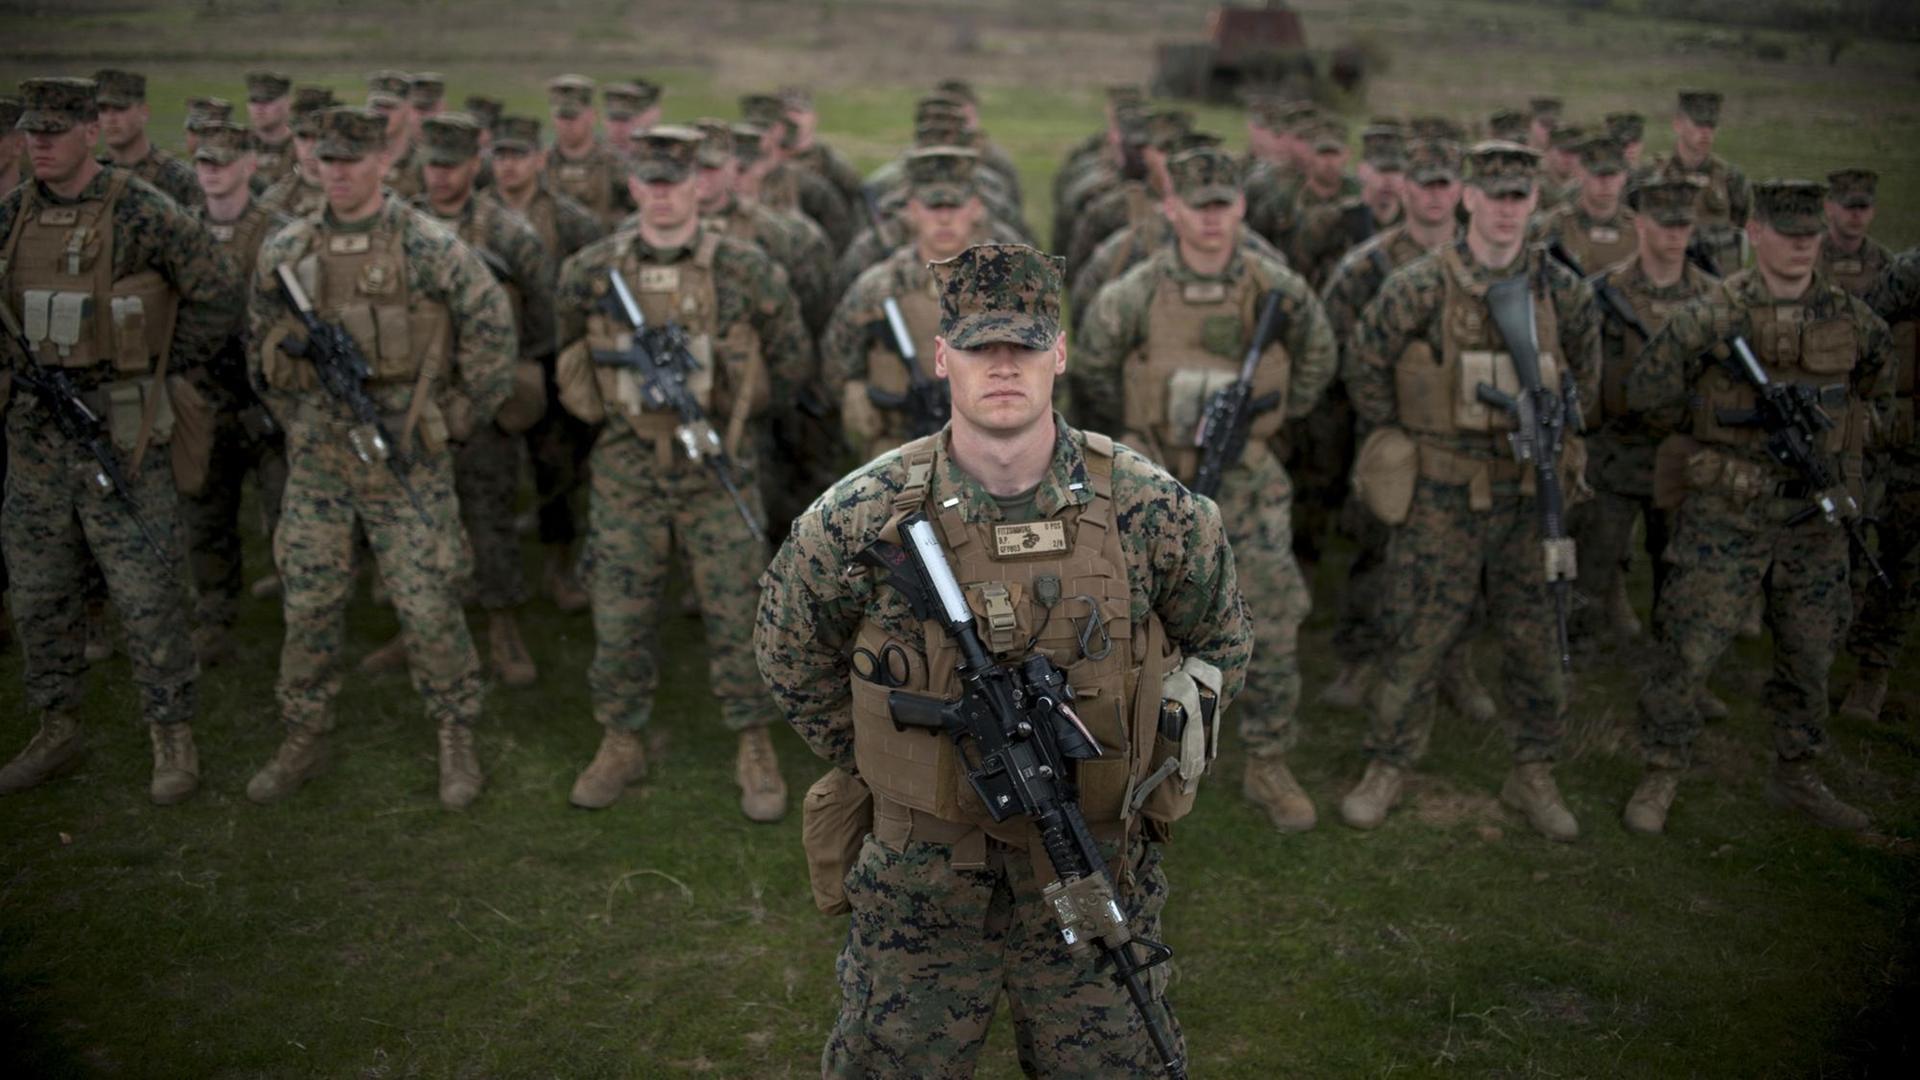 Soldaten des US Marine Corps während eines Militärtrainings in Bulgarien.